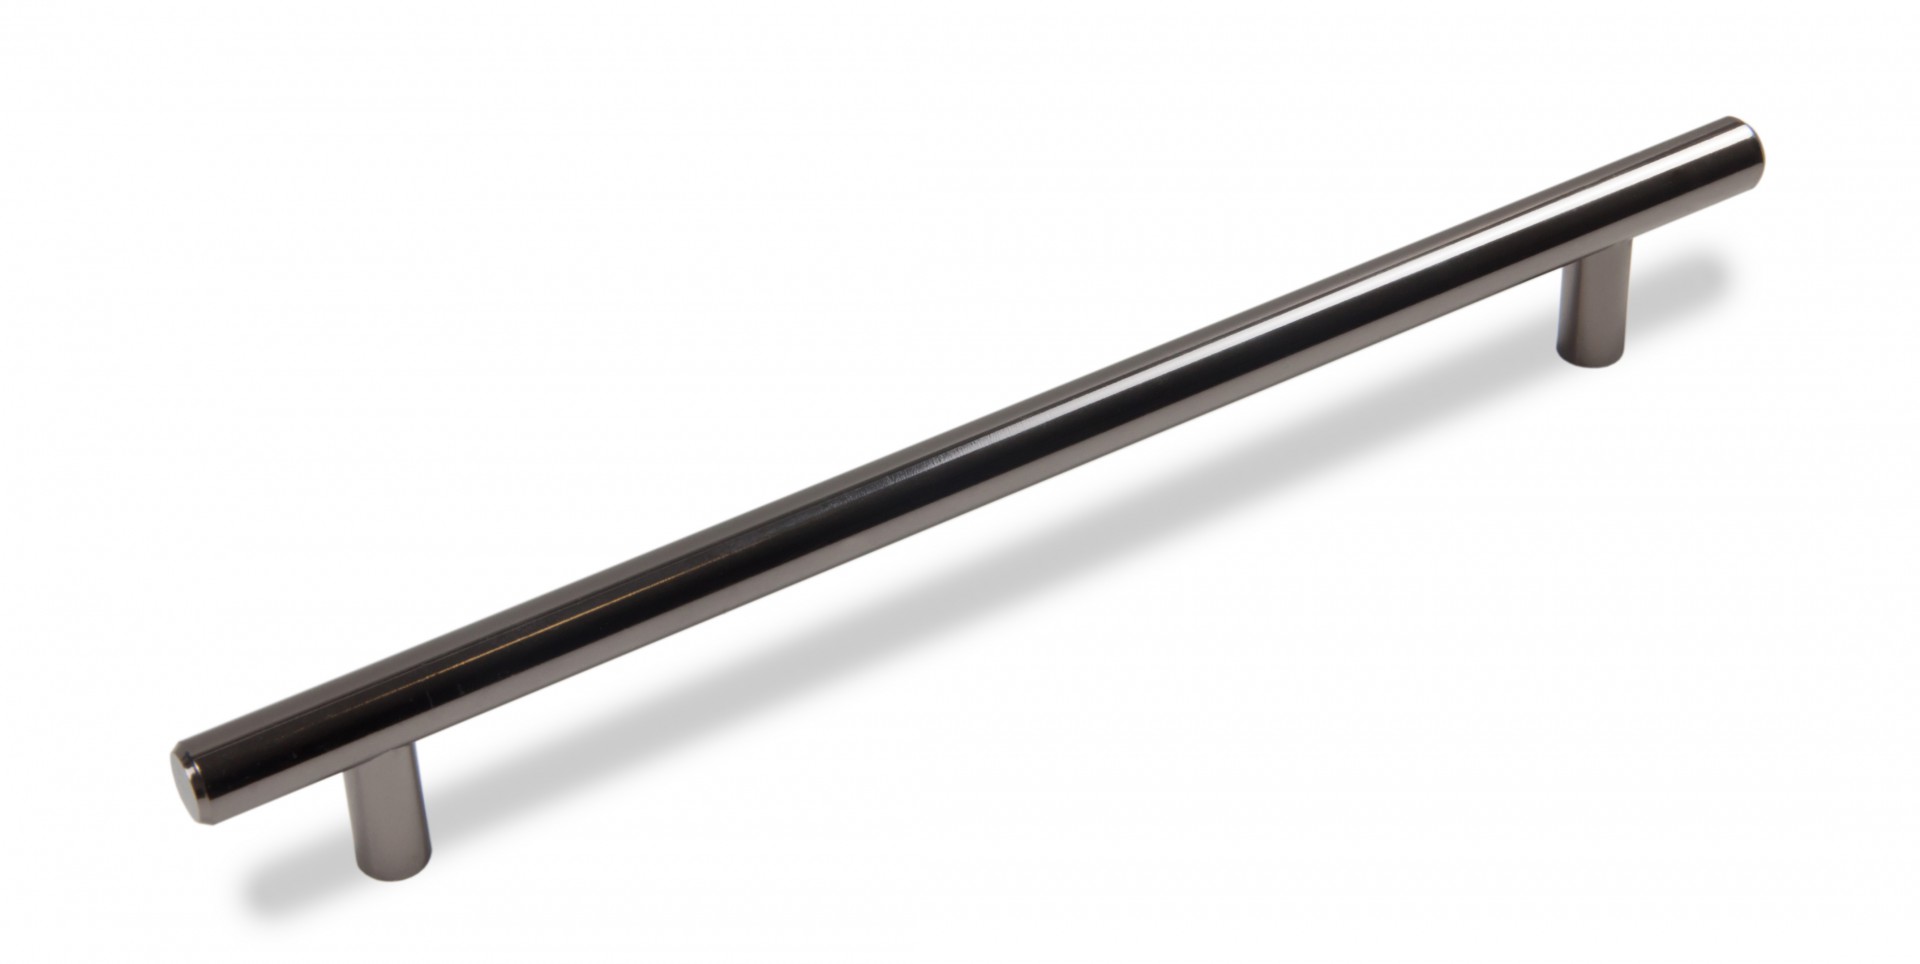 Ручка мебельная рейлинг 320мм черный никель RR002BN.5/320 Boyard / 719947-2 / оптом и в розницу / мебельная фурнитура "ЛАВР"